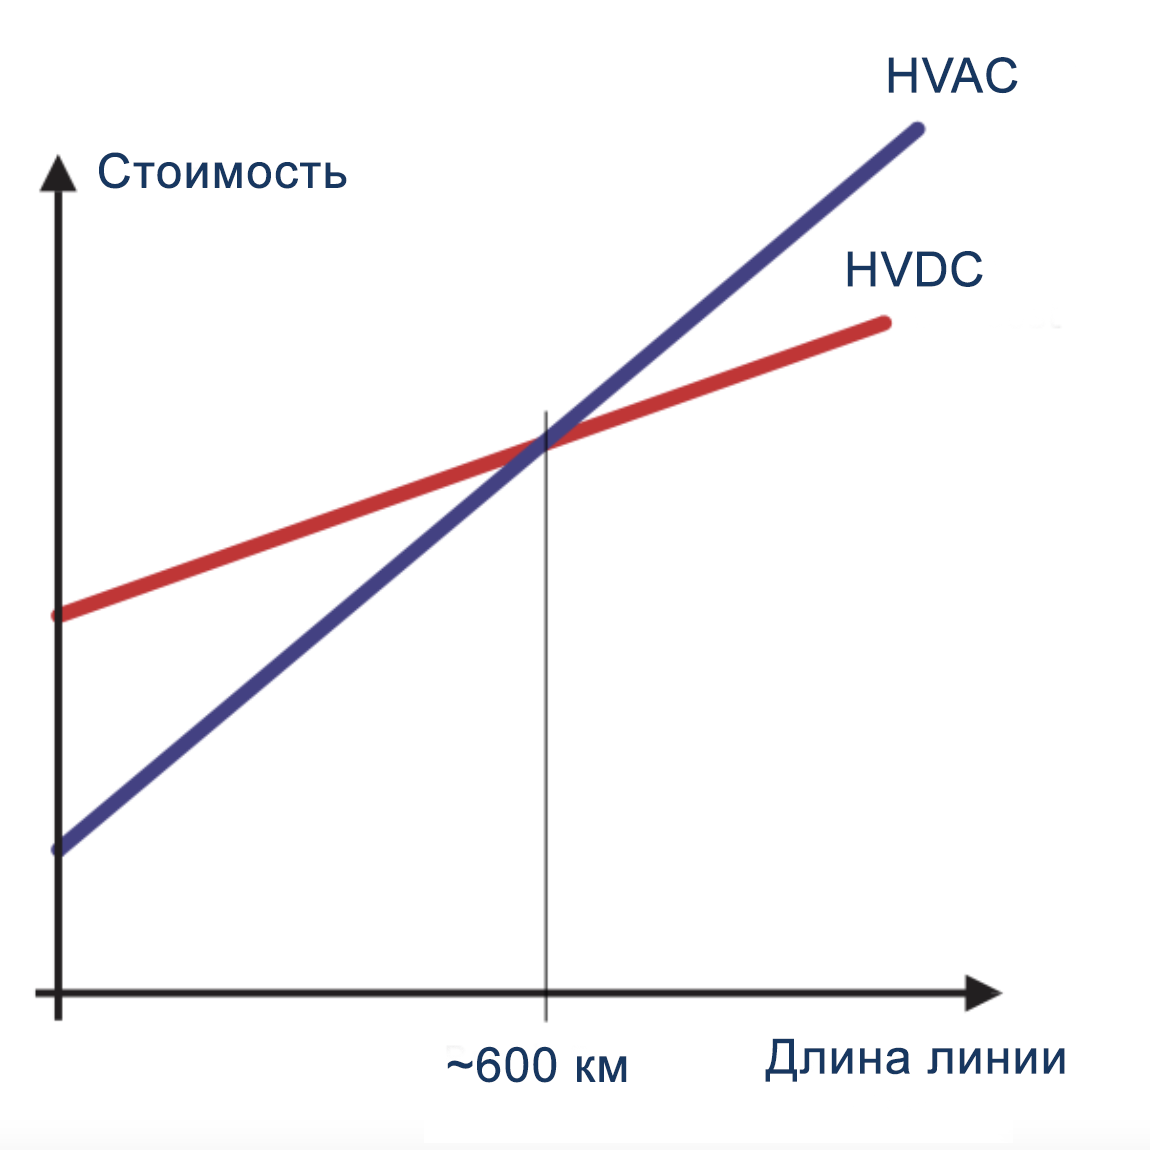 Стоимости HVDC и HVAC пересекаются на линии, длинной около 600 км. Далее HVDC становится заметно выгодней. Источник: wdwd / Wikimedia Commons